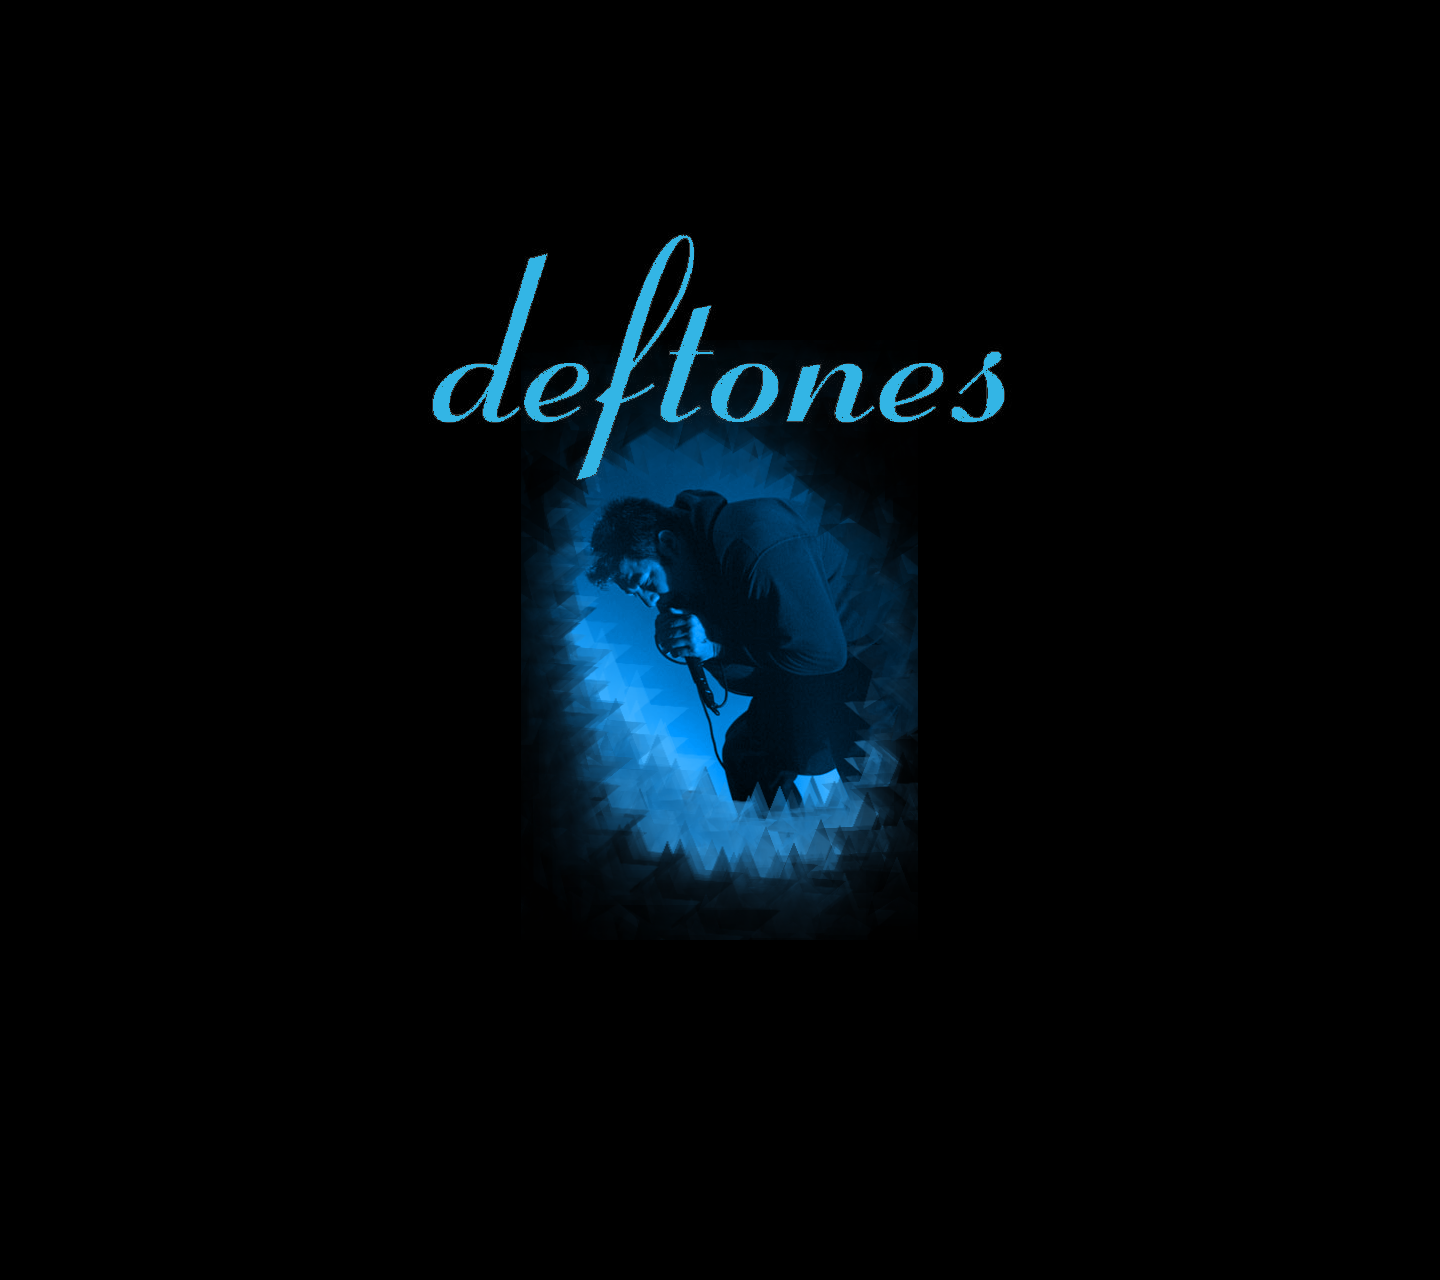 deftones albums free download